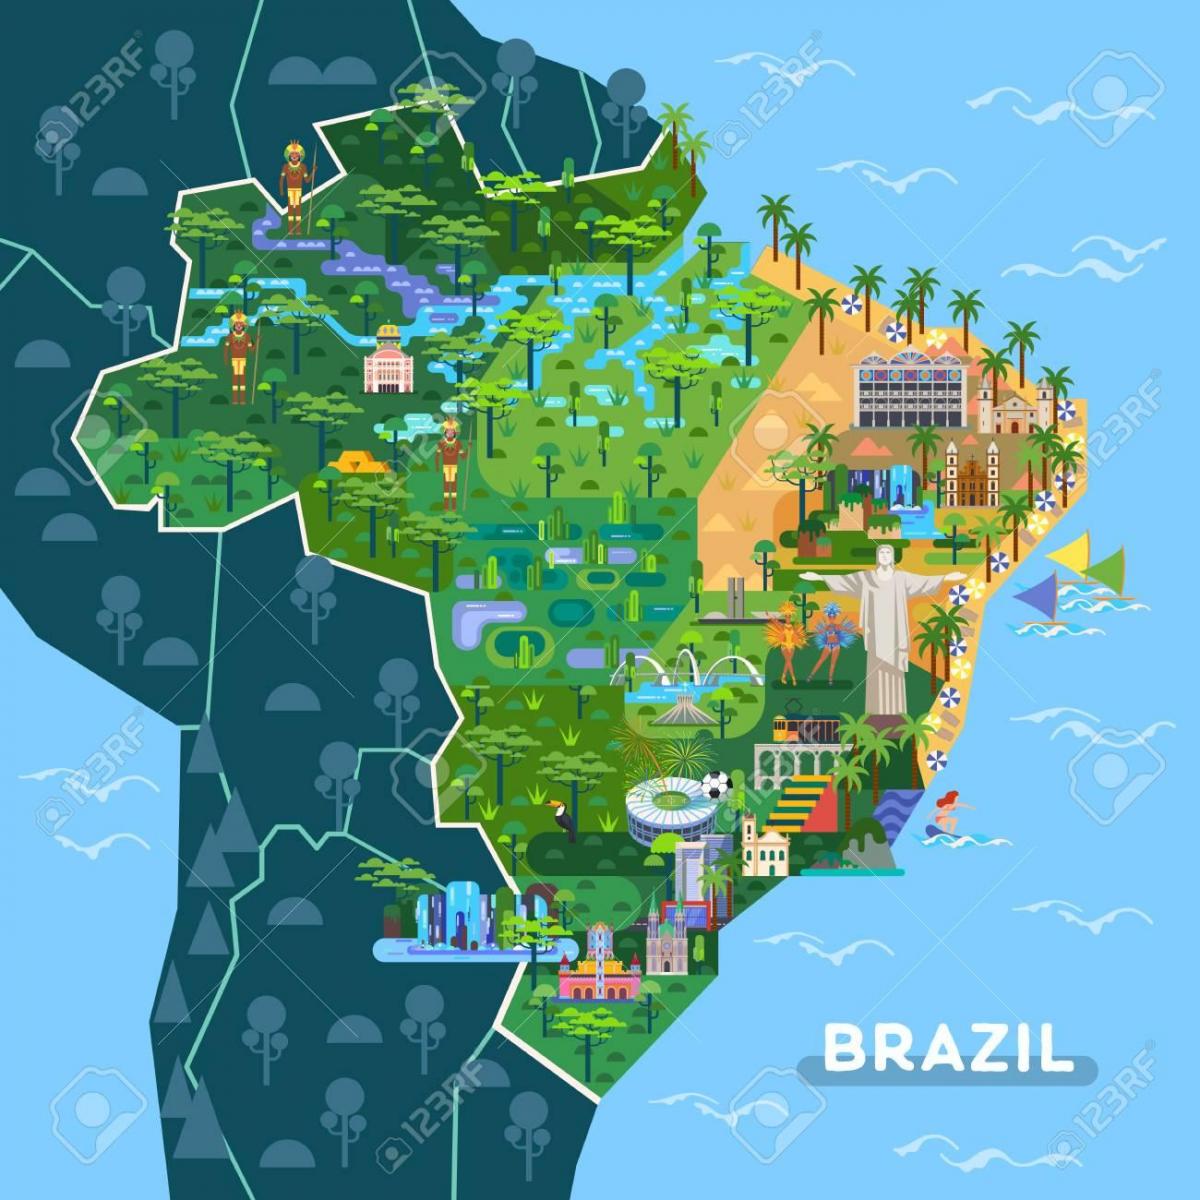 карта туристических достопримечательностей Бразилии